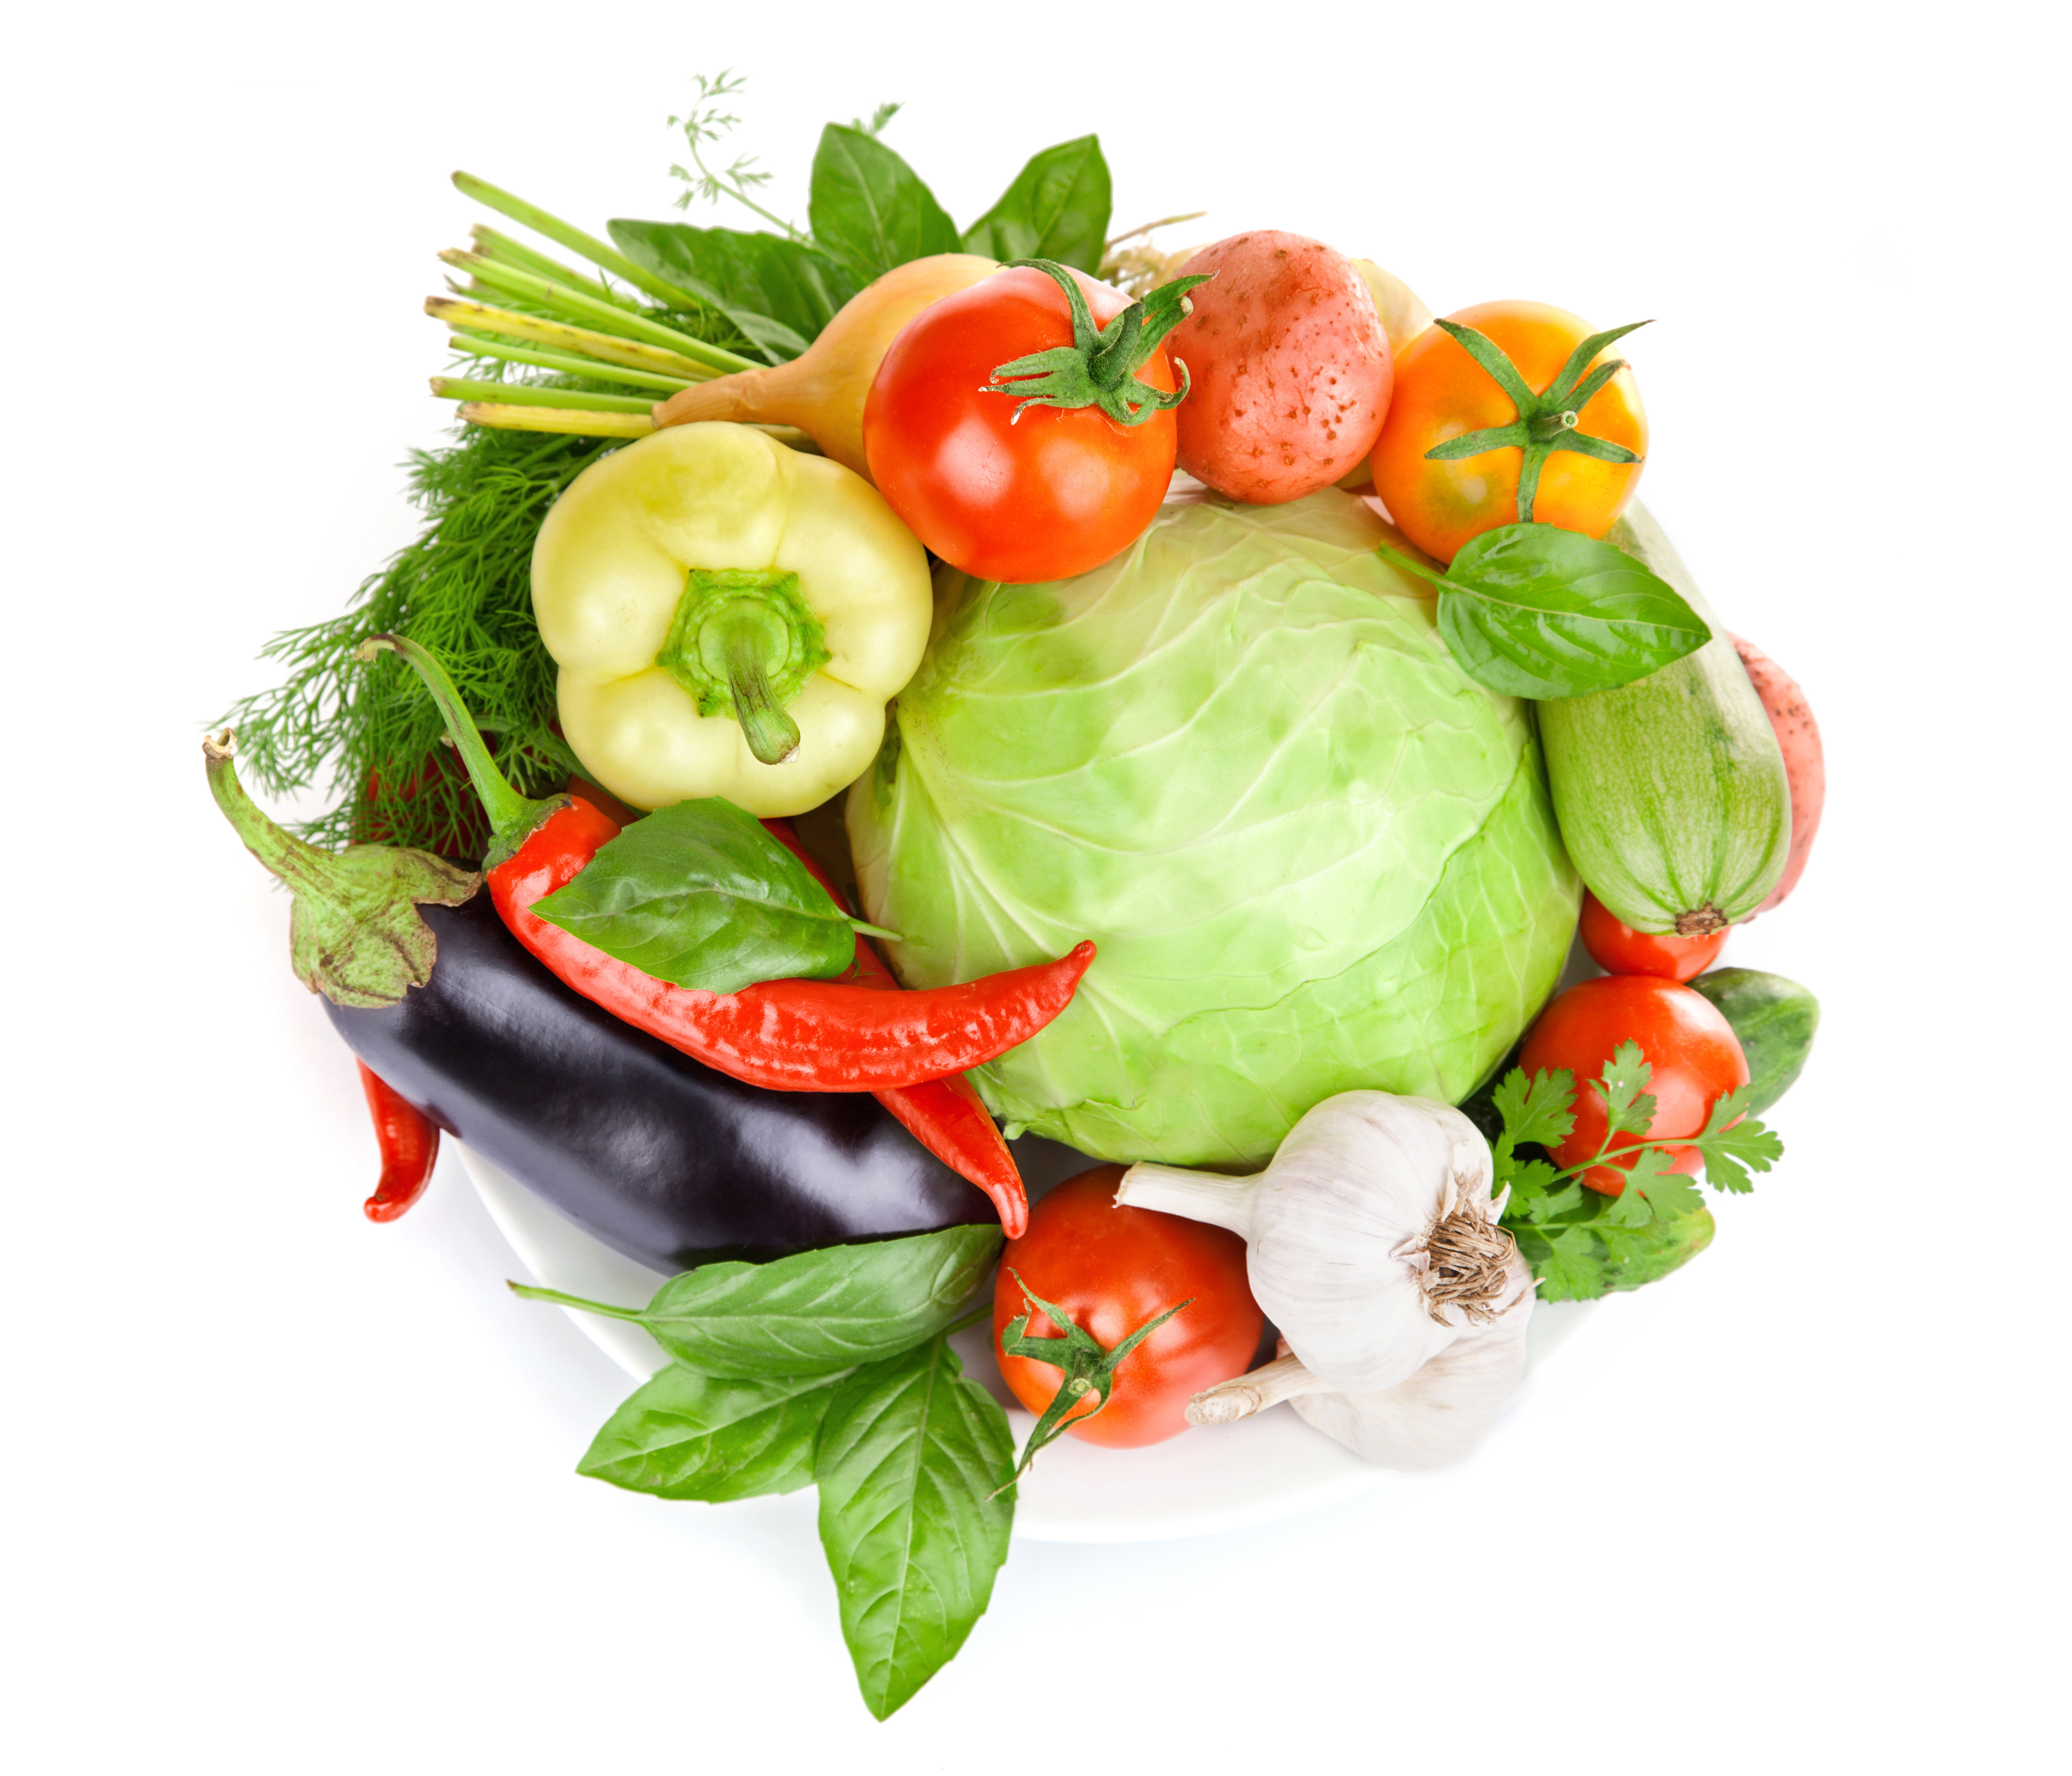 фото овощей на белом фоне